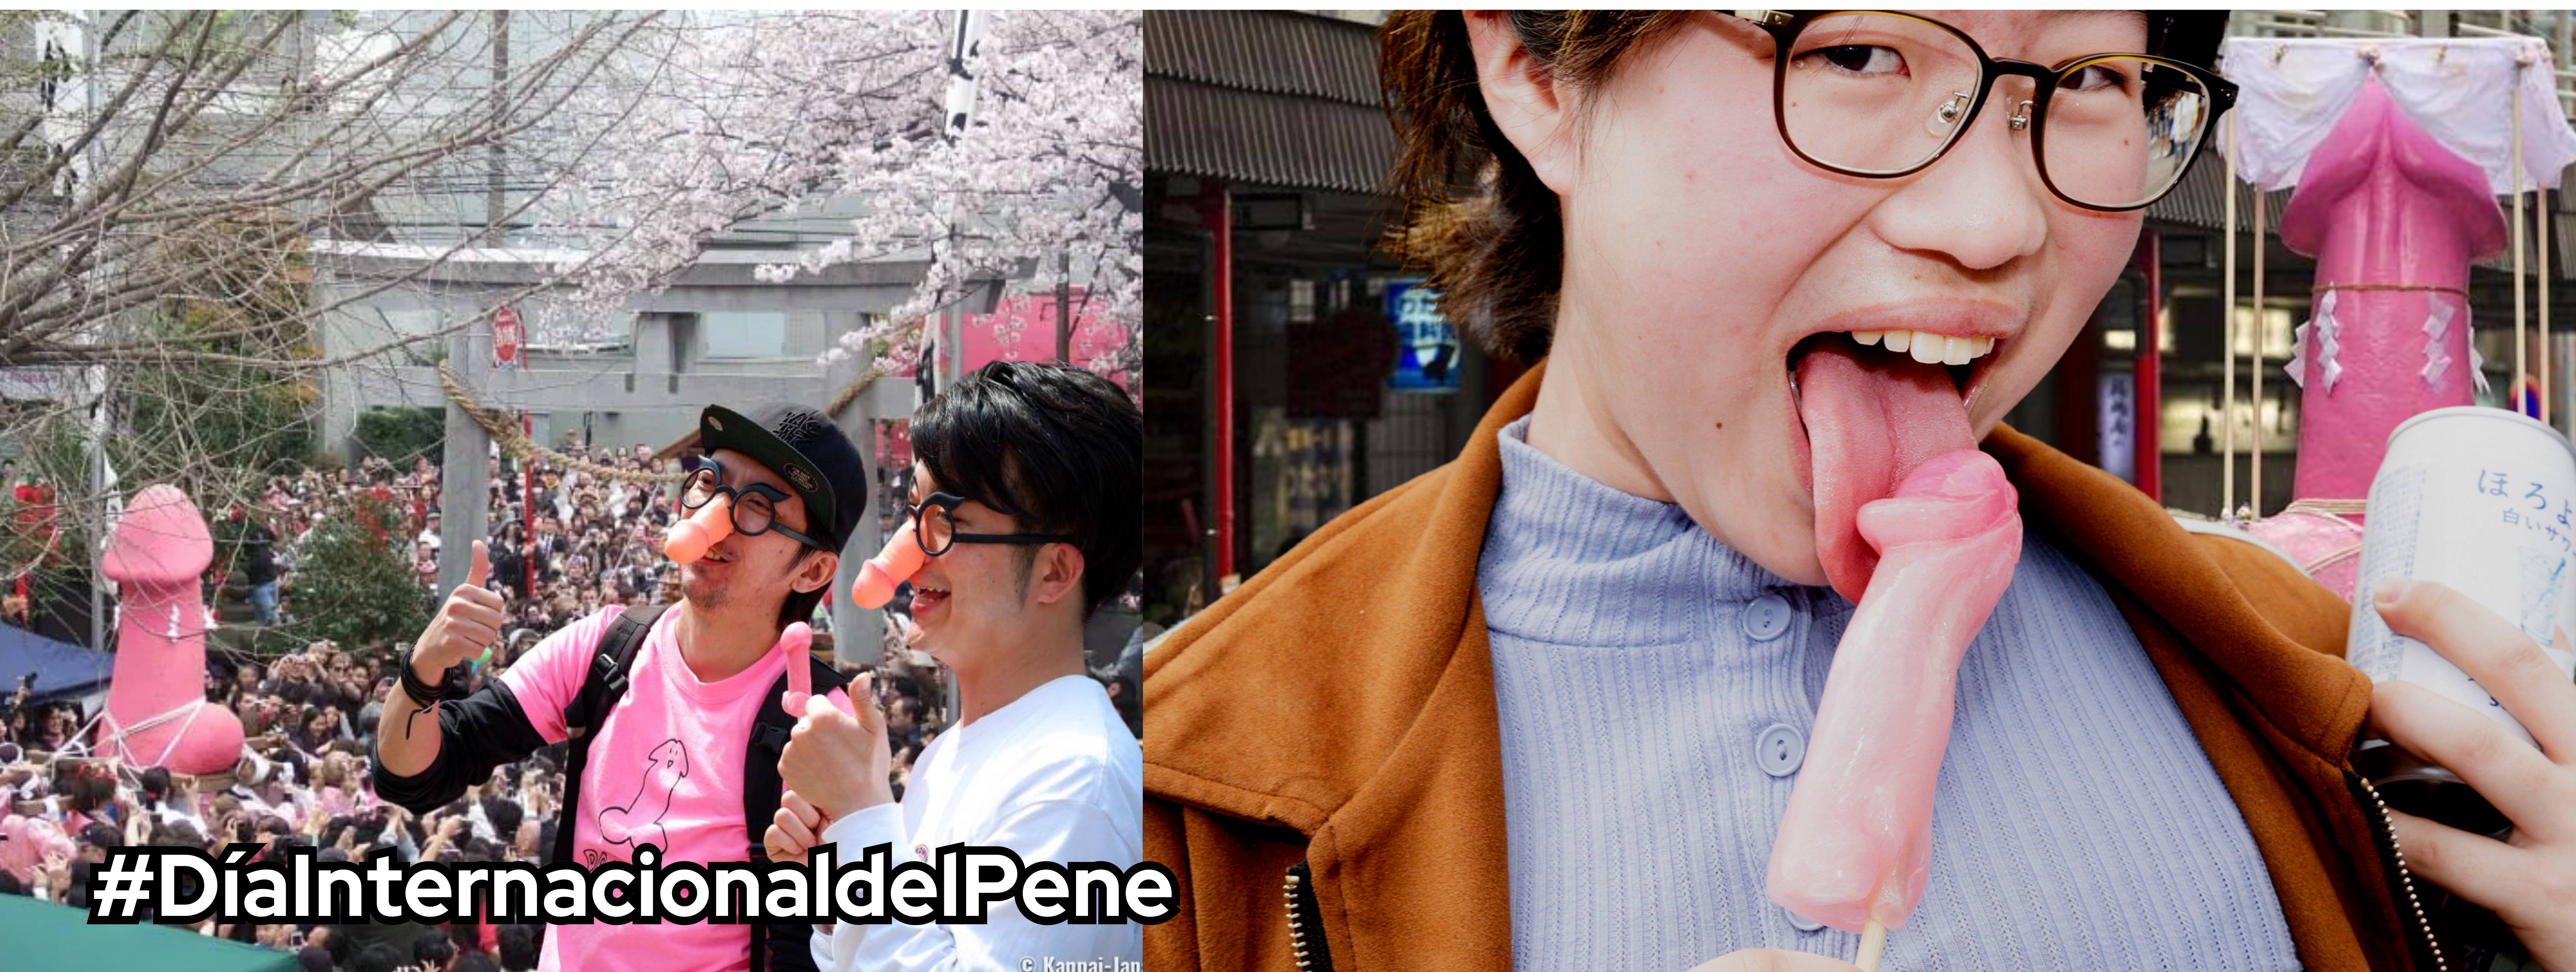 Dos hombres jóvenes con penes de plástico en la nariz y una mujer comiéndose un caramelo con forma de pene.